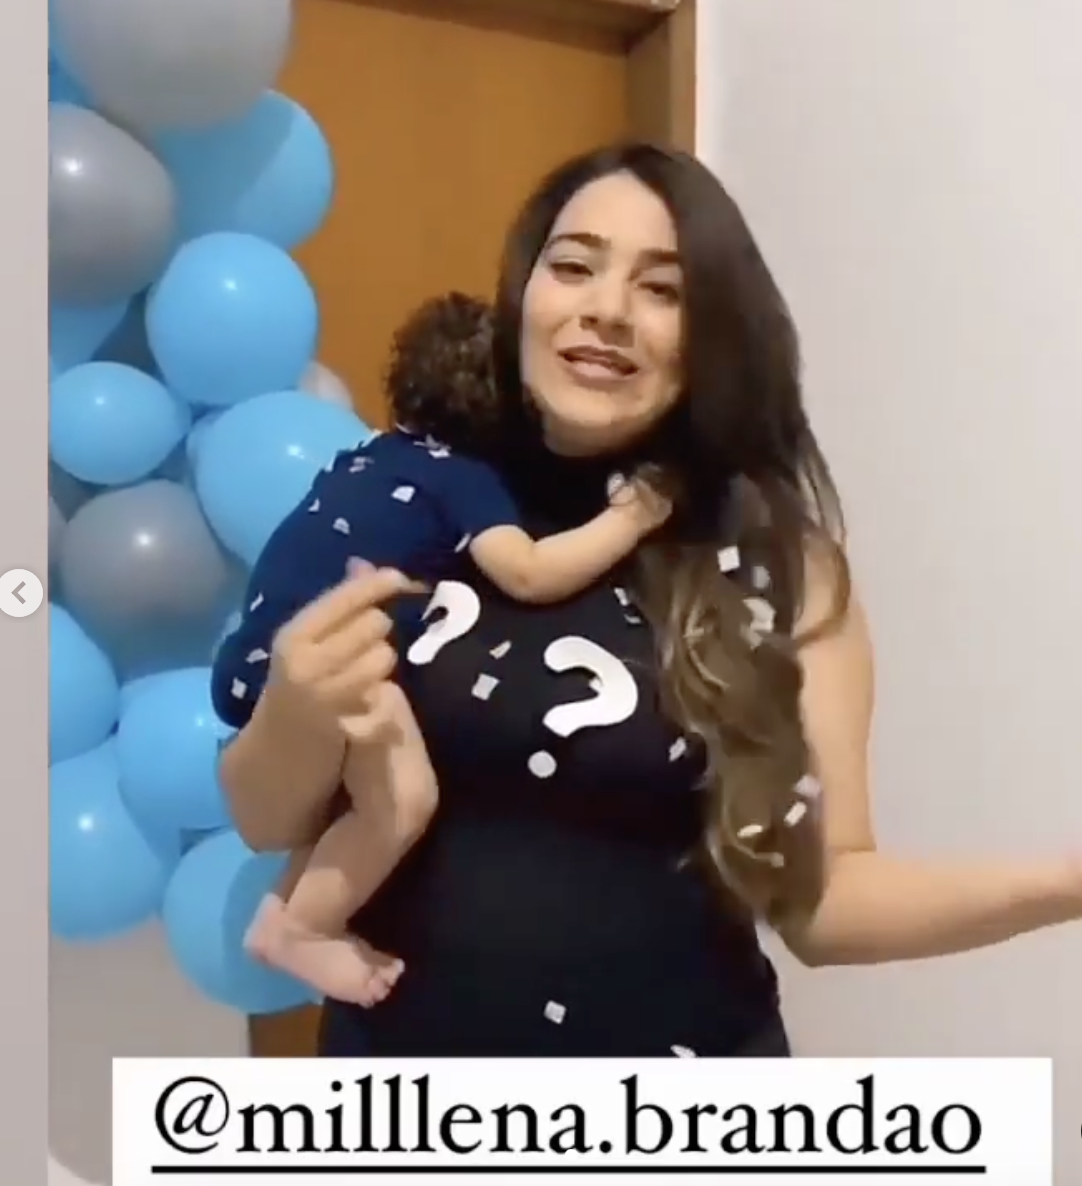 Millena Brandao en la fiesta de revelación de paternidad. | Foto: instagram.com/milllena.brandao/